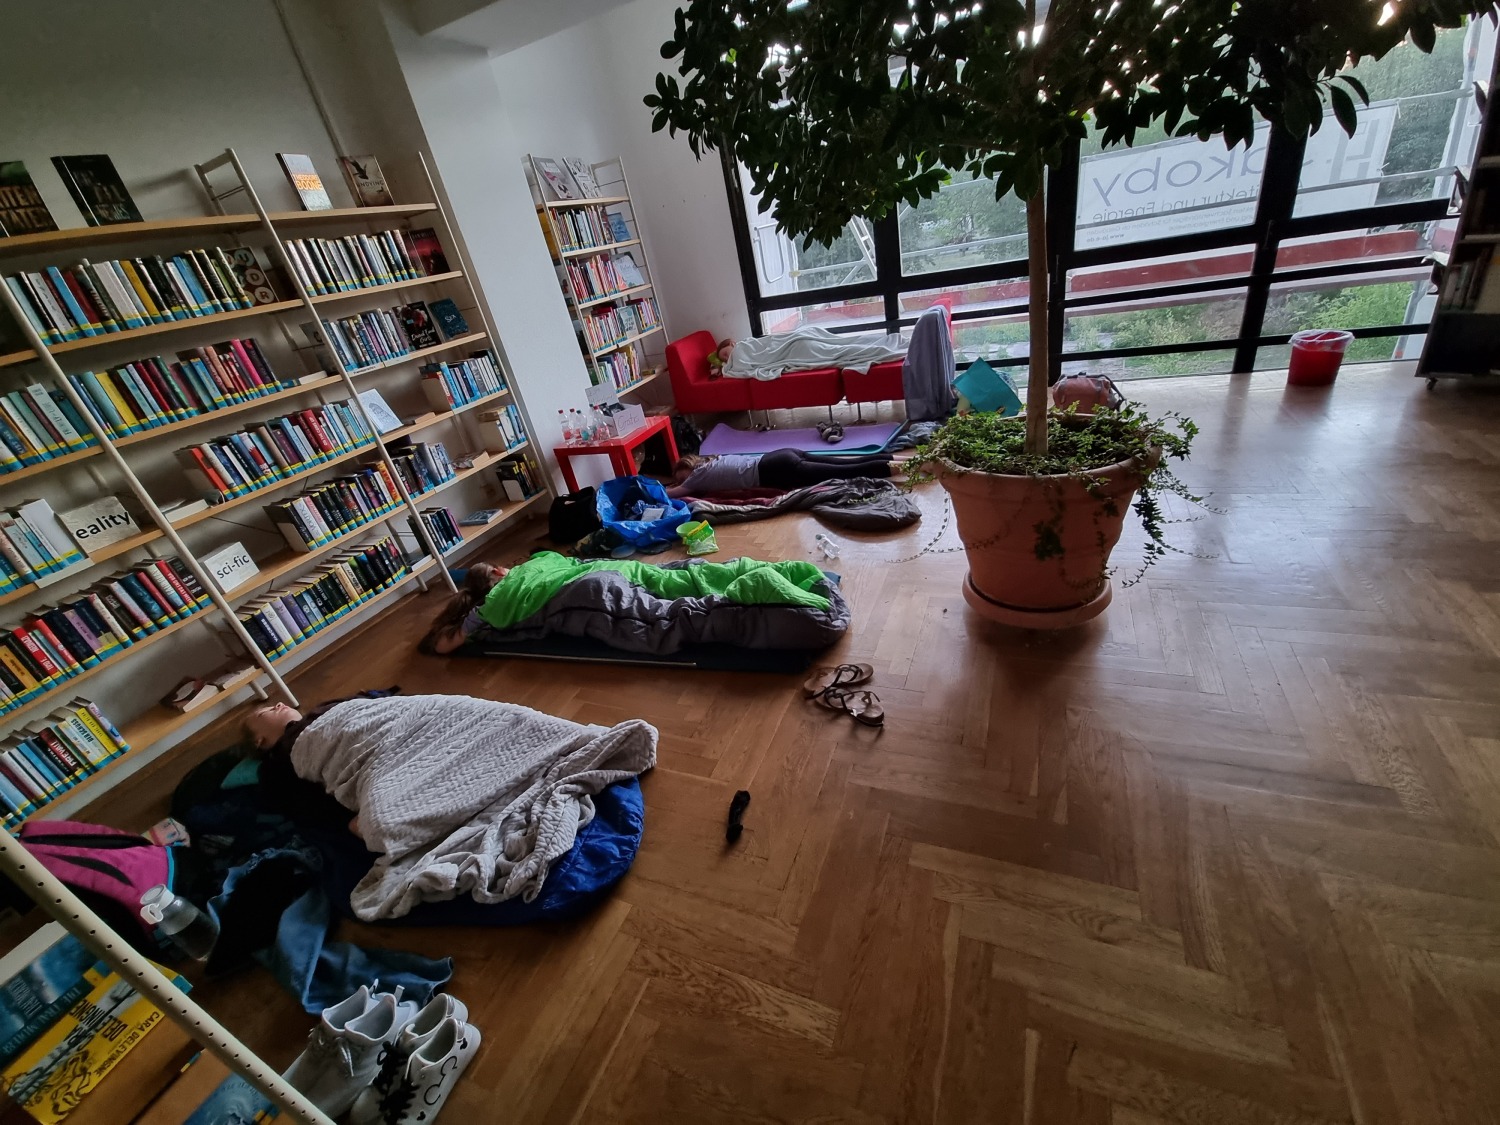 Jugendliche liegen in Schlafsäcken vor Bücherregalen